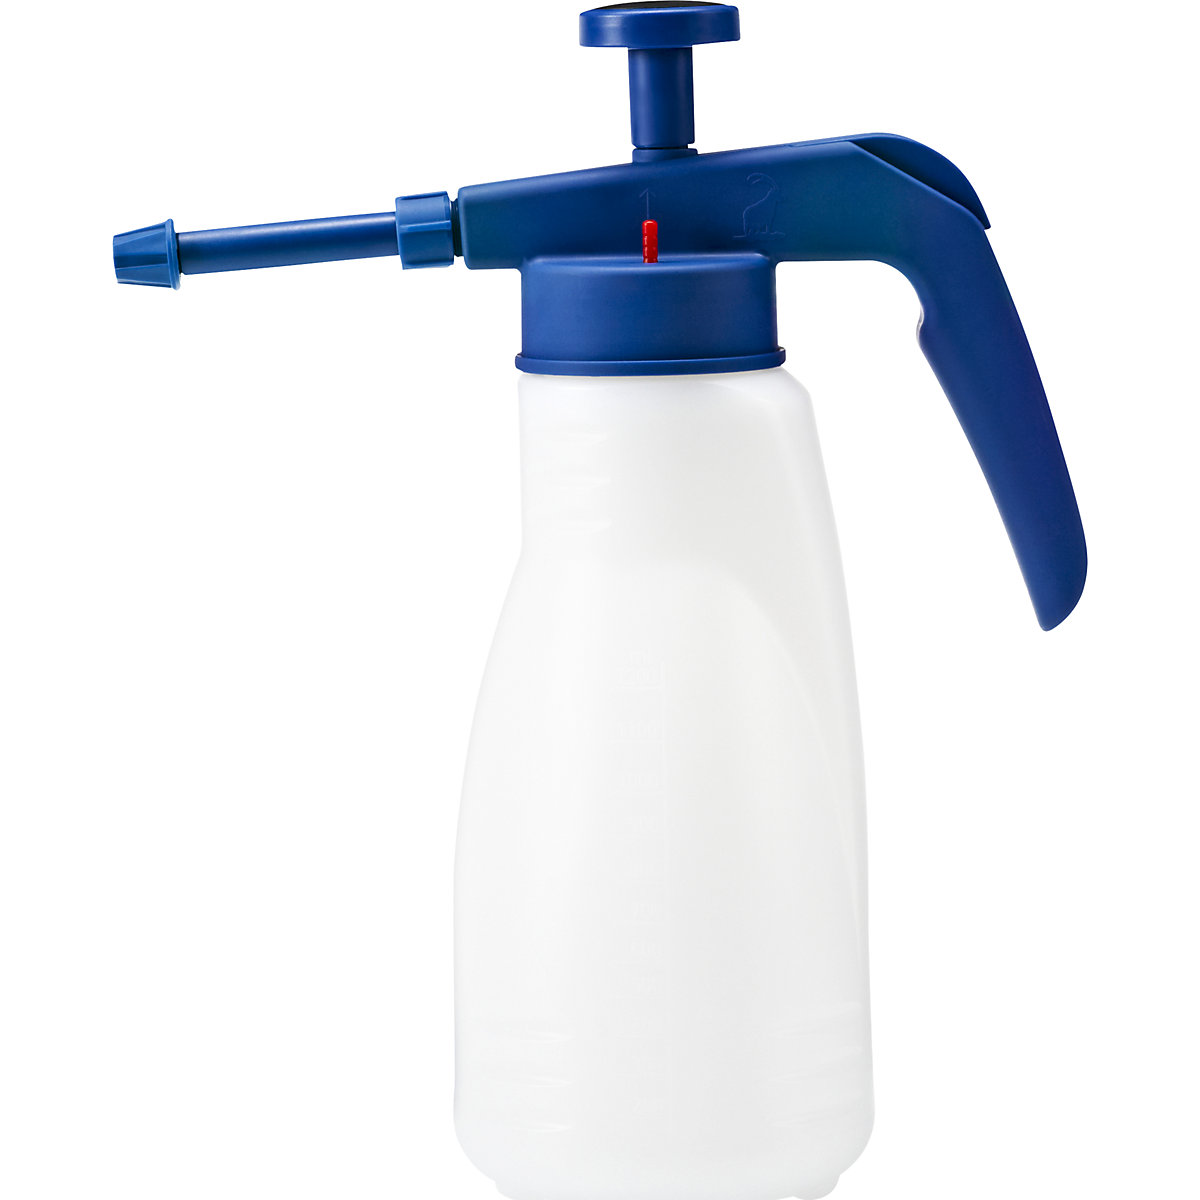 Pump spray container - PRESSOL